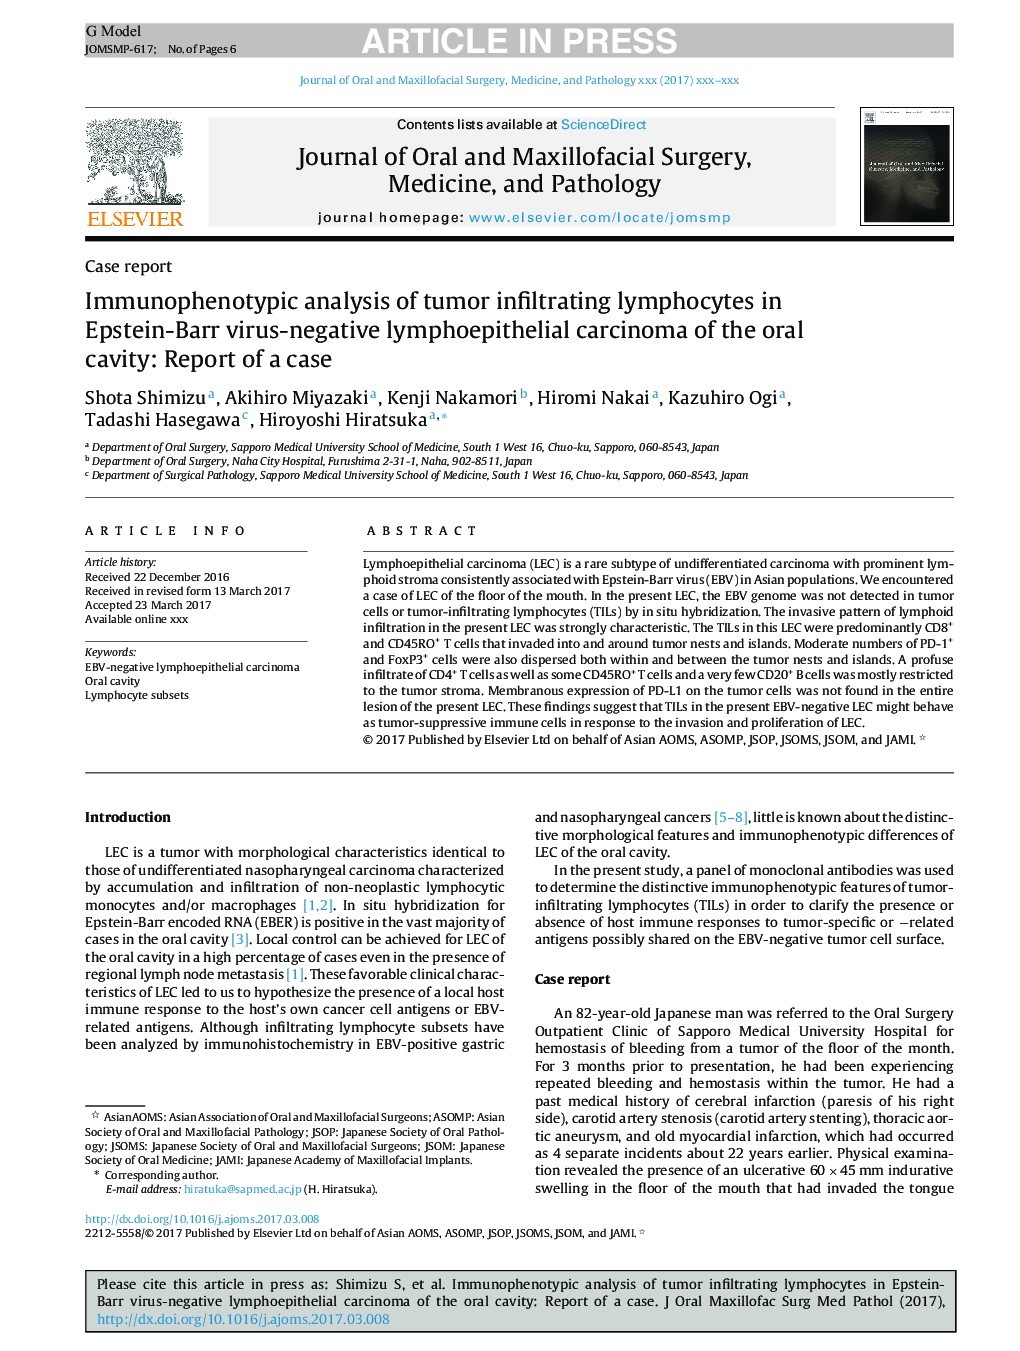 تجزیه و تحلیل ایمونوفنوتایپی لنفوسیتهای نفوذی تومور در کارسینوم لنفوپیتلیال ویروس منفی اپشتاین-بار در حفره دهان: گزارش یک مورد 